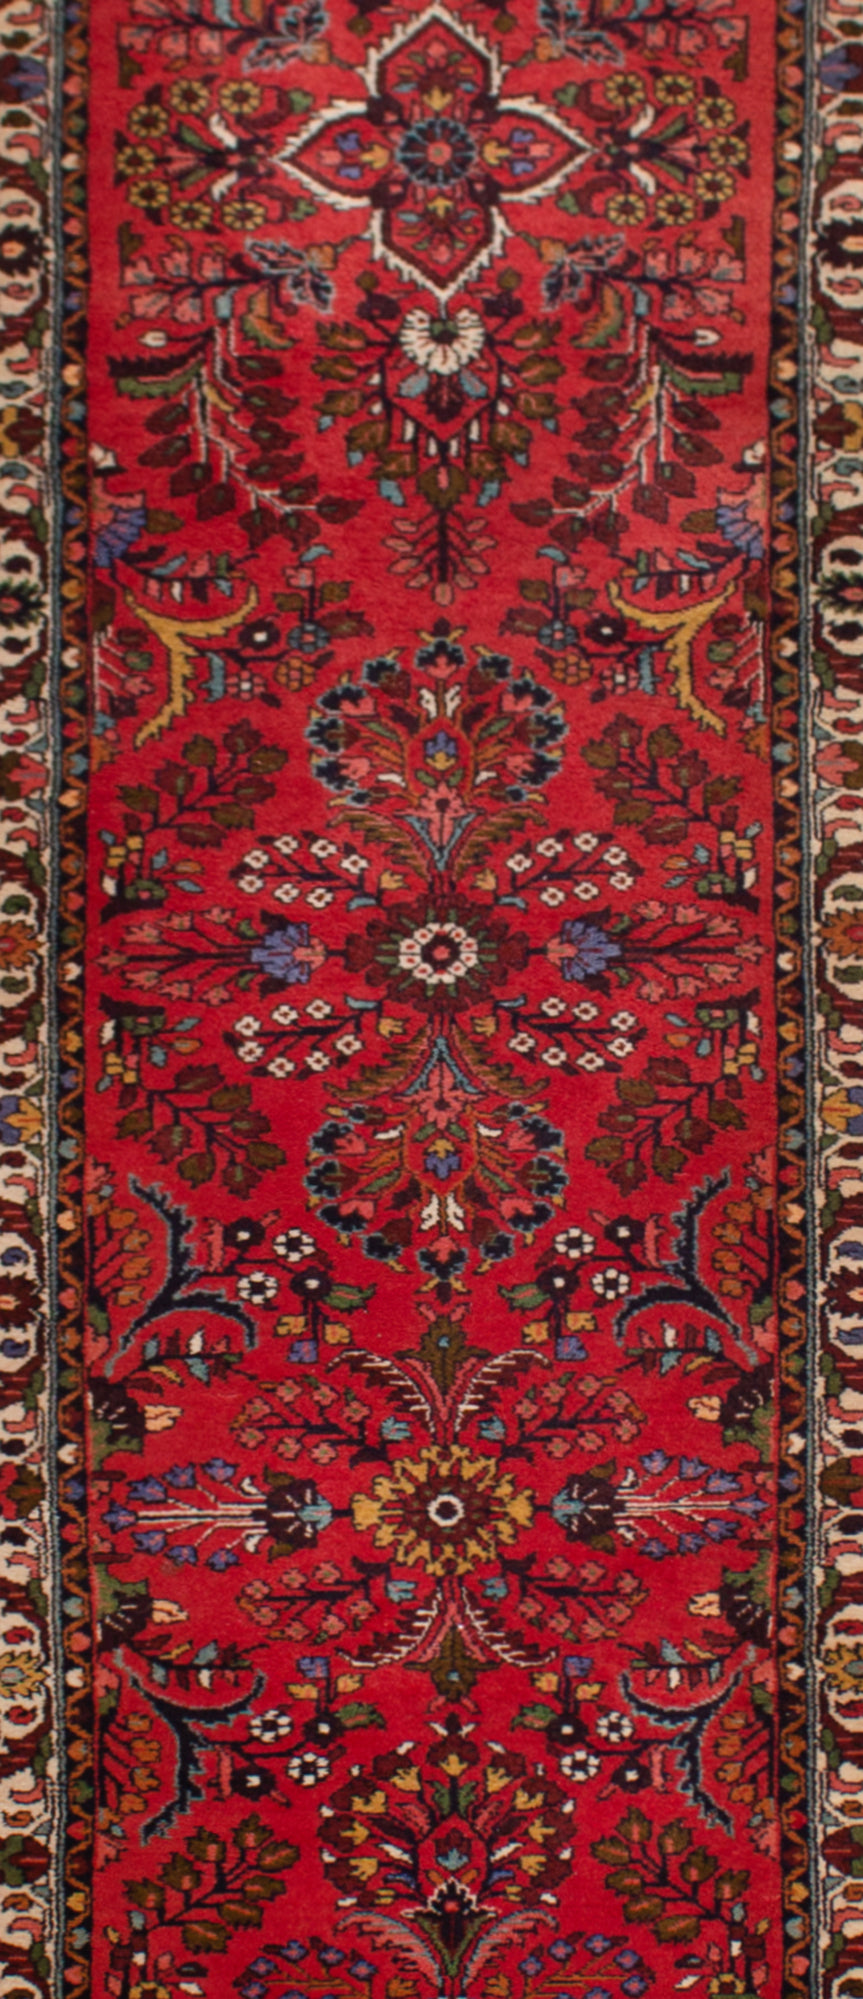 Sarough do tapete persa | 508 x 75 cm